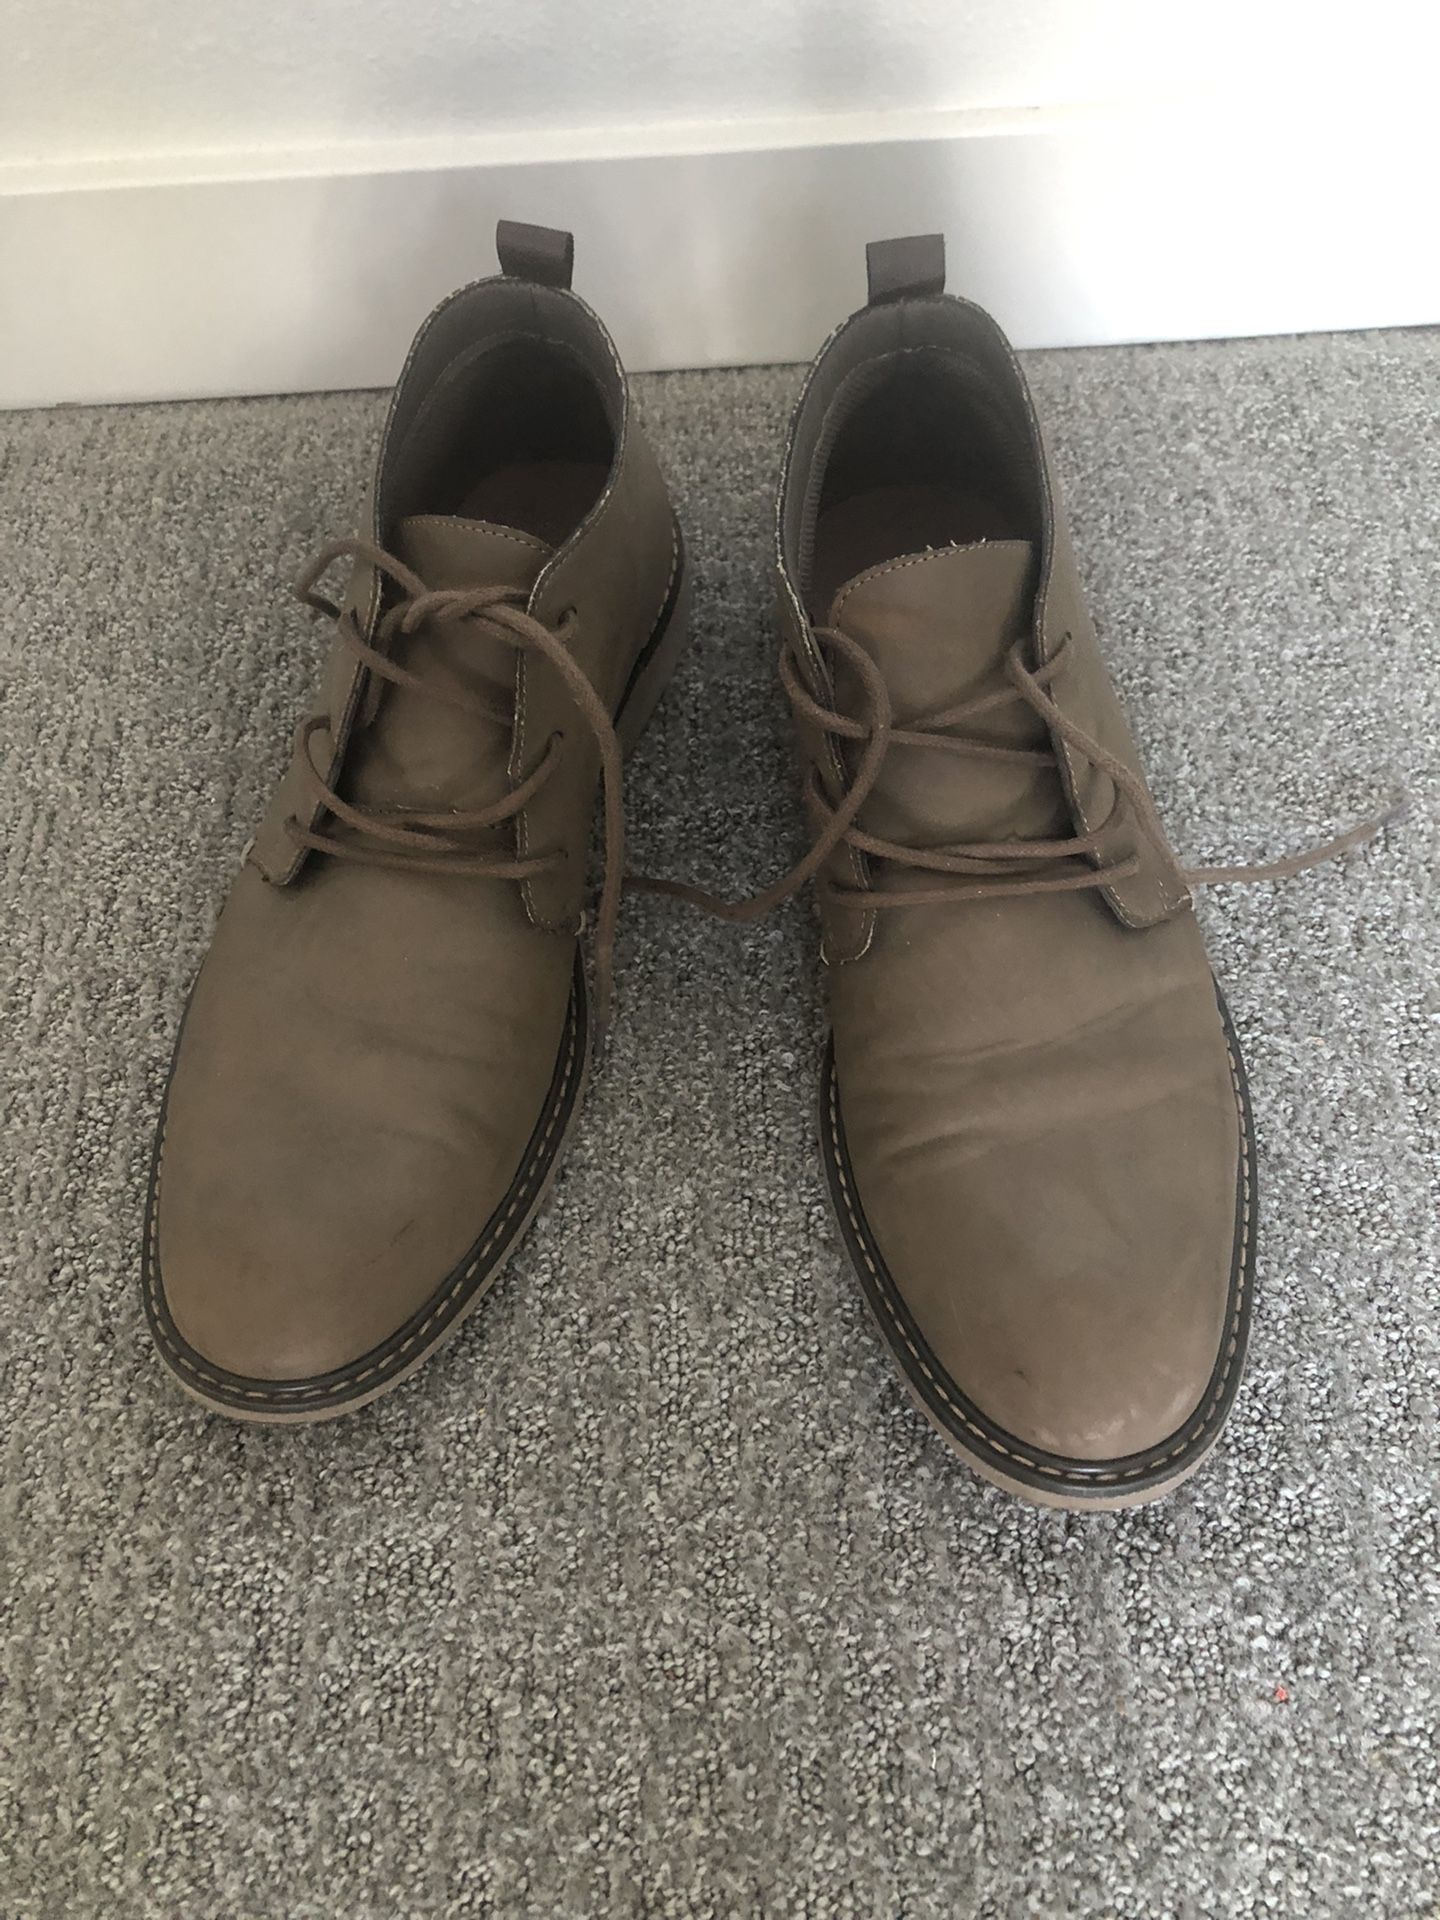 men's boots, size 10.5